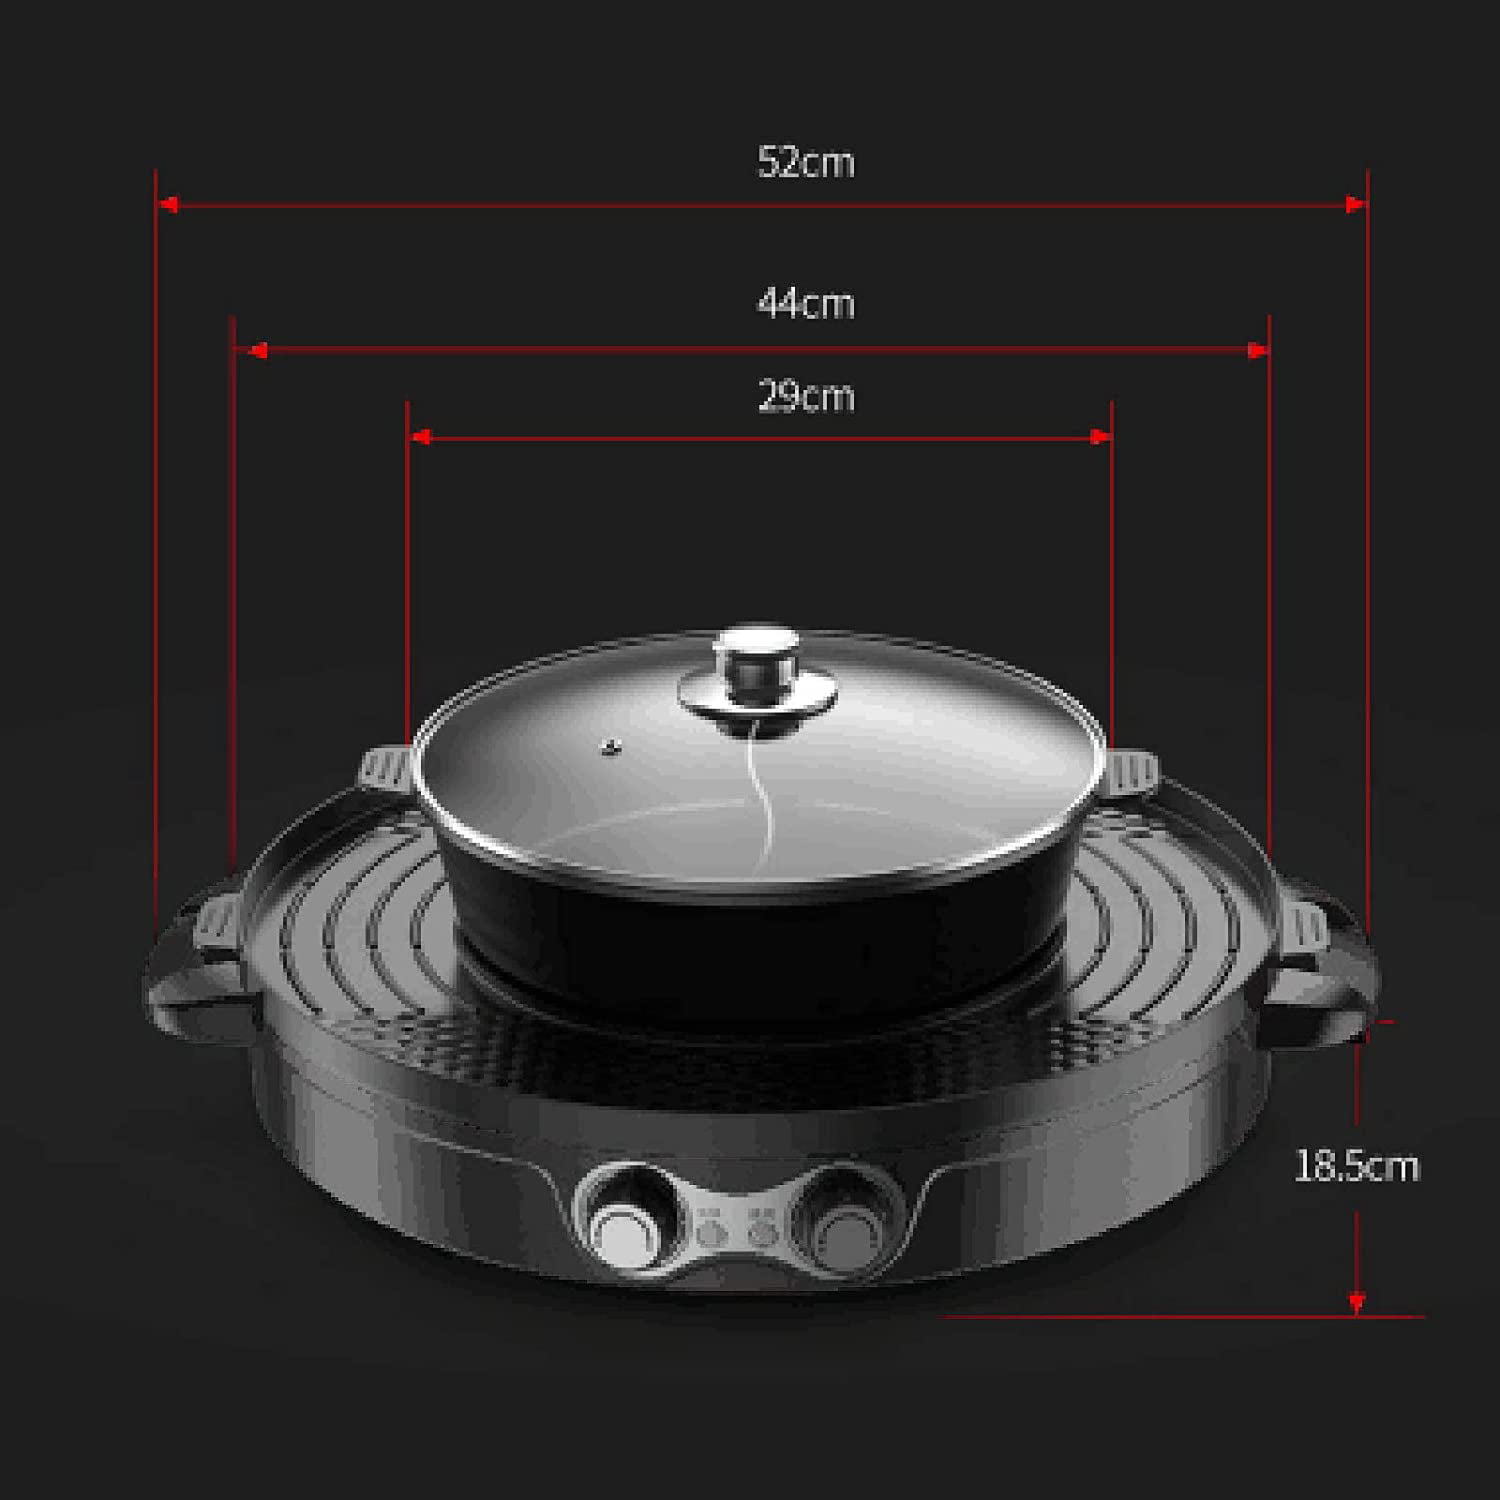 Jual Korean Grill Pan Electric Multifungsi 2in1 Hotpot BBQ